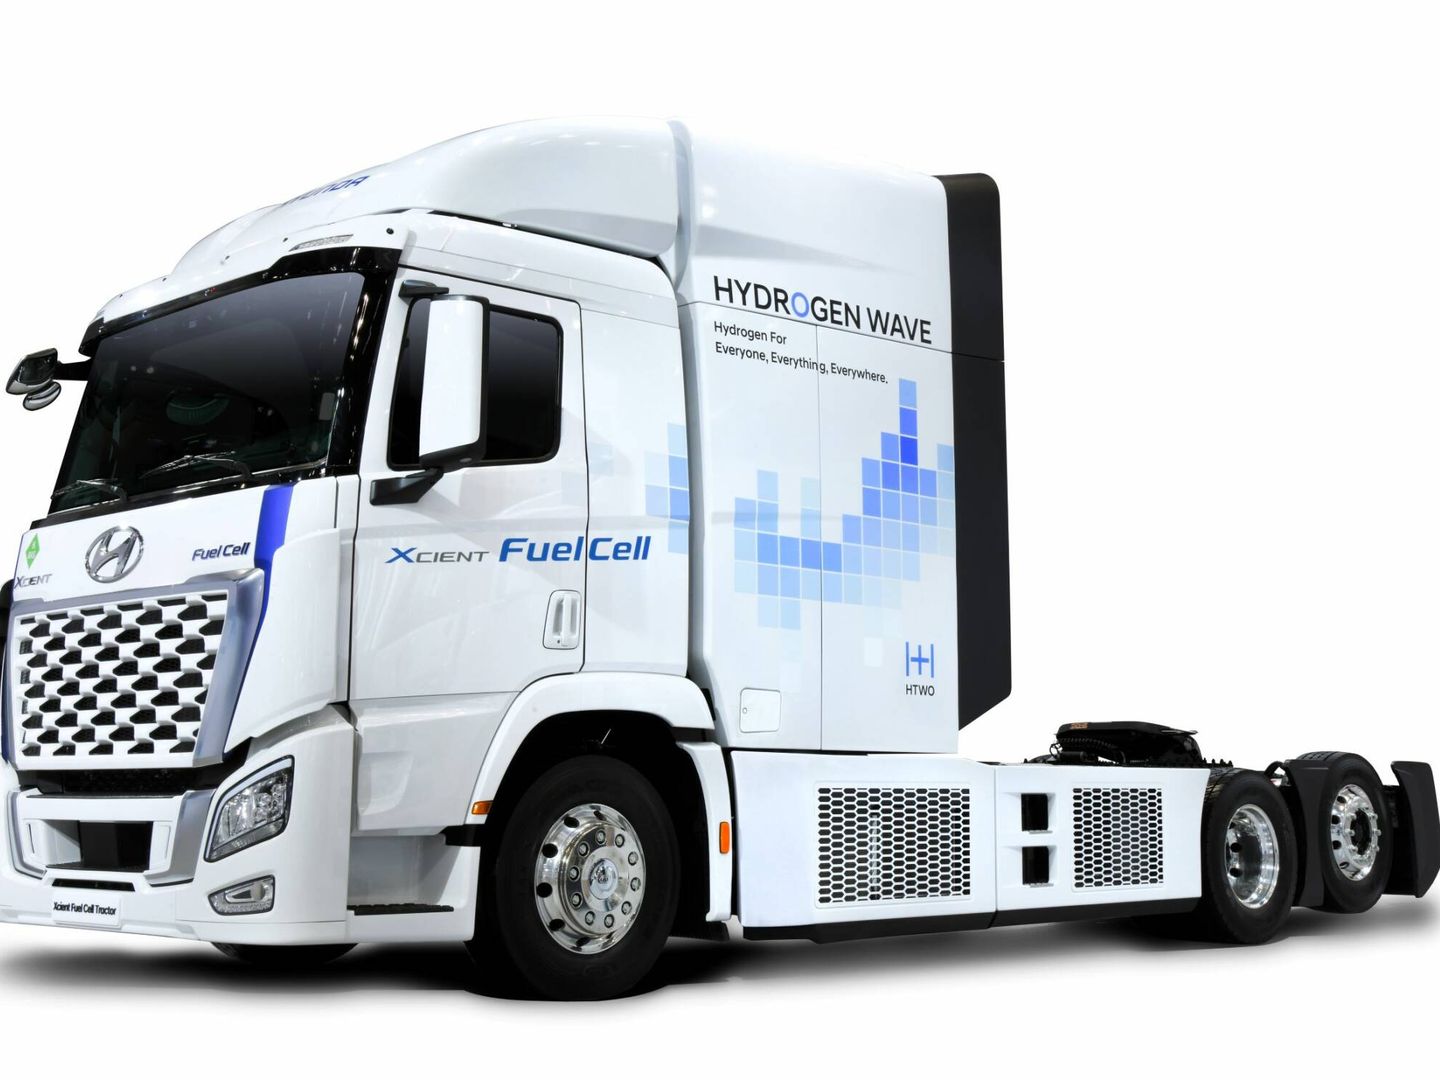 A partir de los camiones Xcient Fuell Cell, operativos desde el pasado año, Hyundai ha creado una cabeza tractora el transporte de gran tonelaje con hidrógeno. Debutará en 2023.